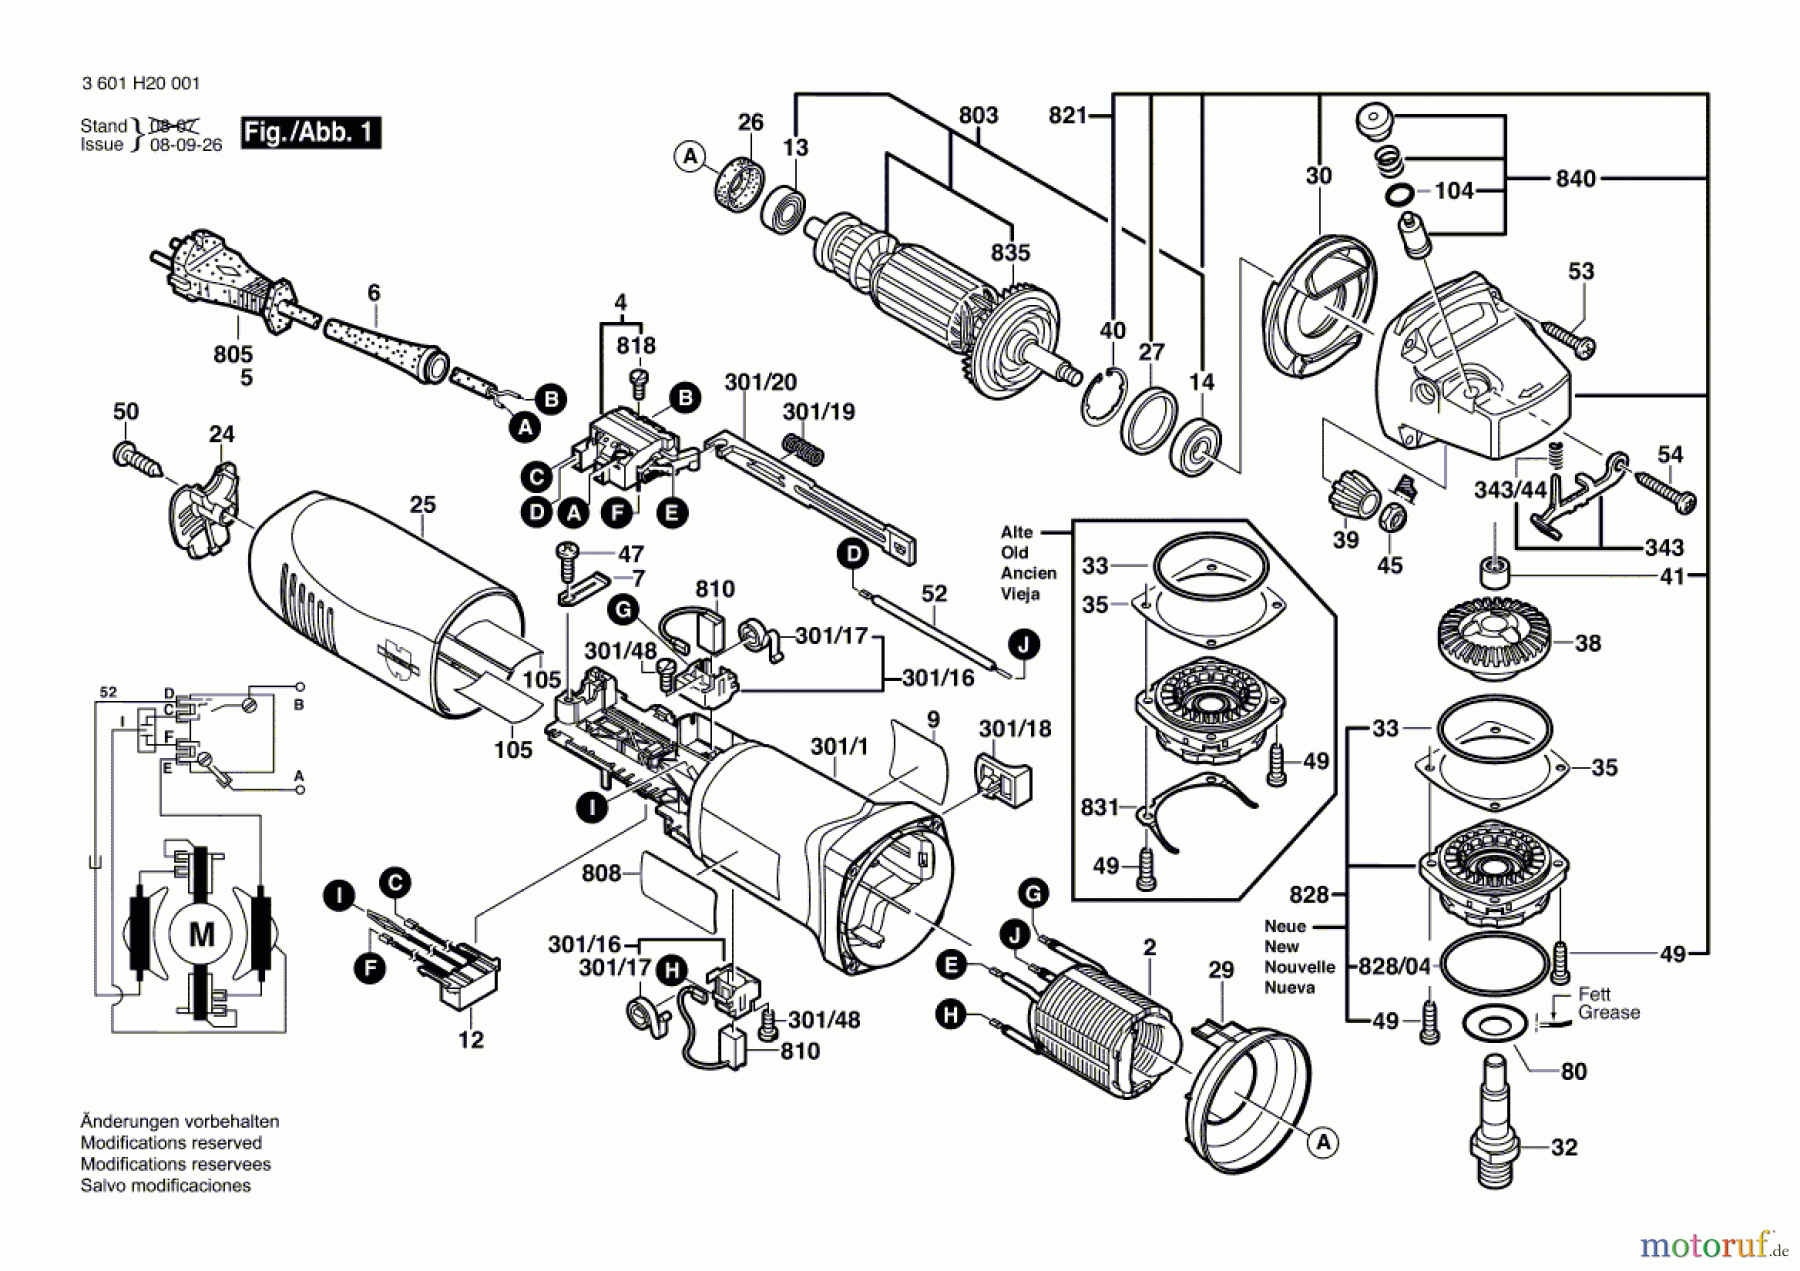  Bosch Werkzeug Winkelschleifer EWS 115 Seite 1